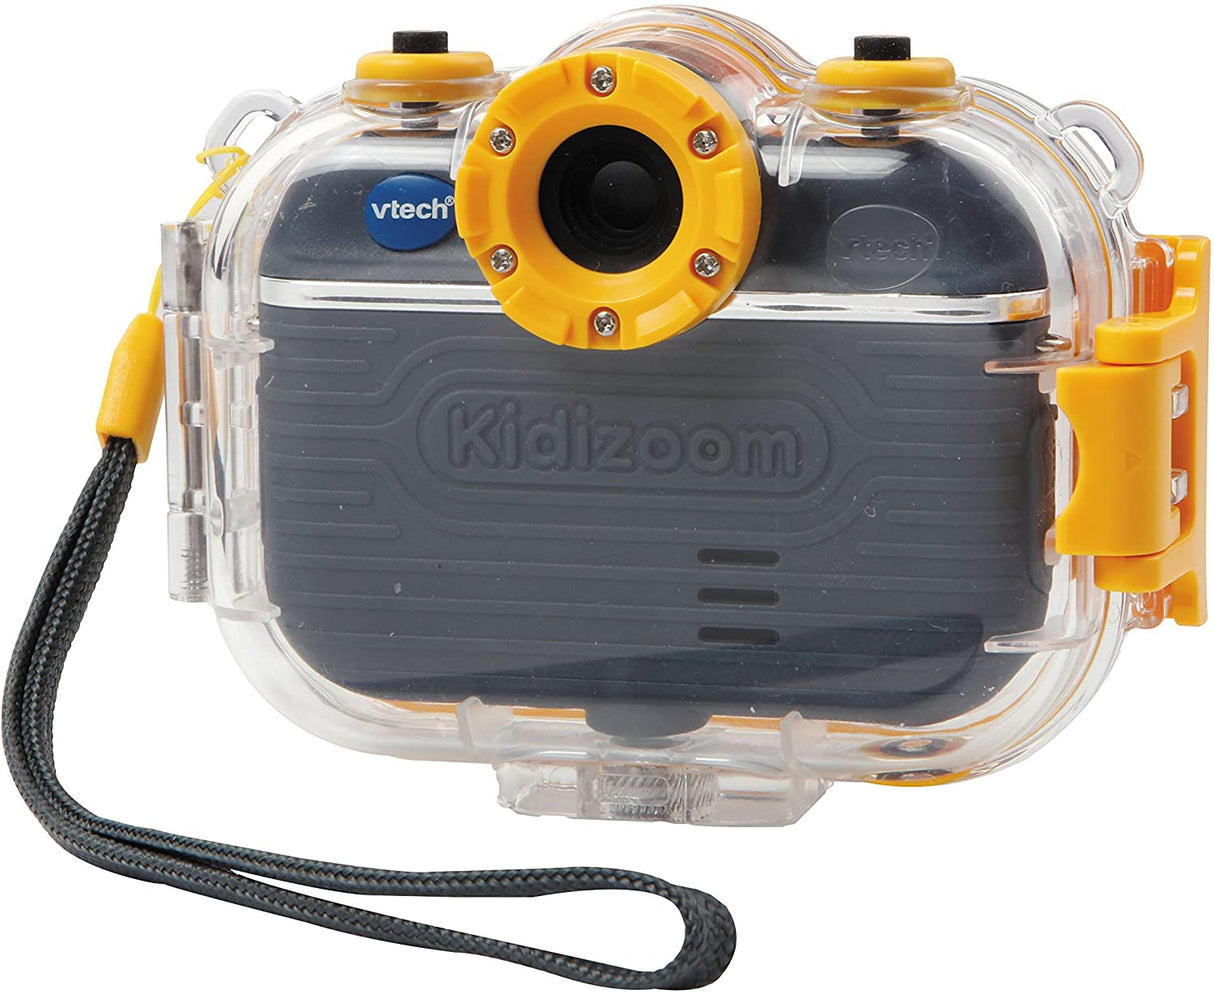 VTech Kidizoom Action Cam 180°